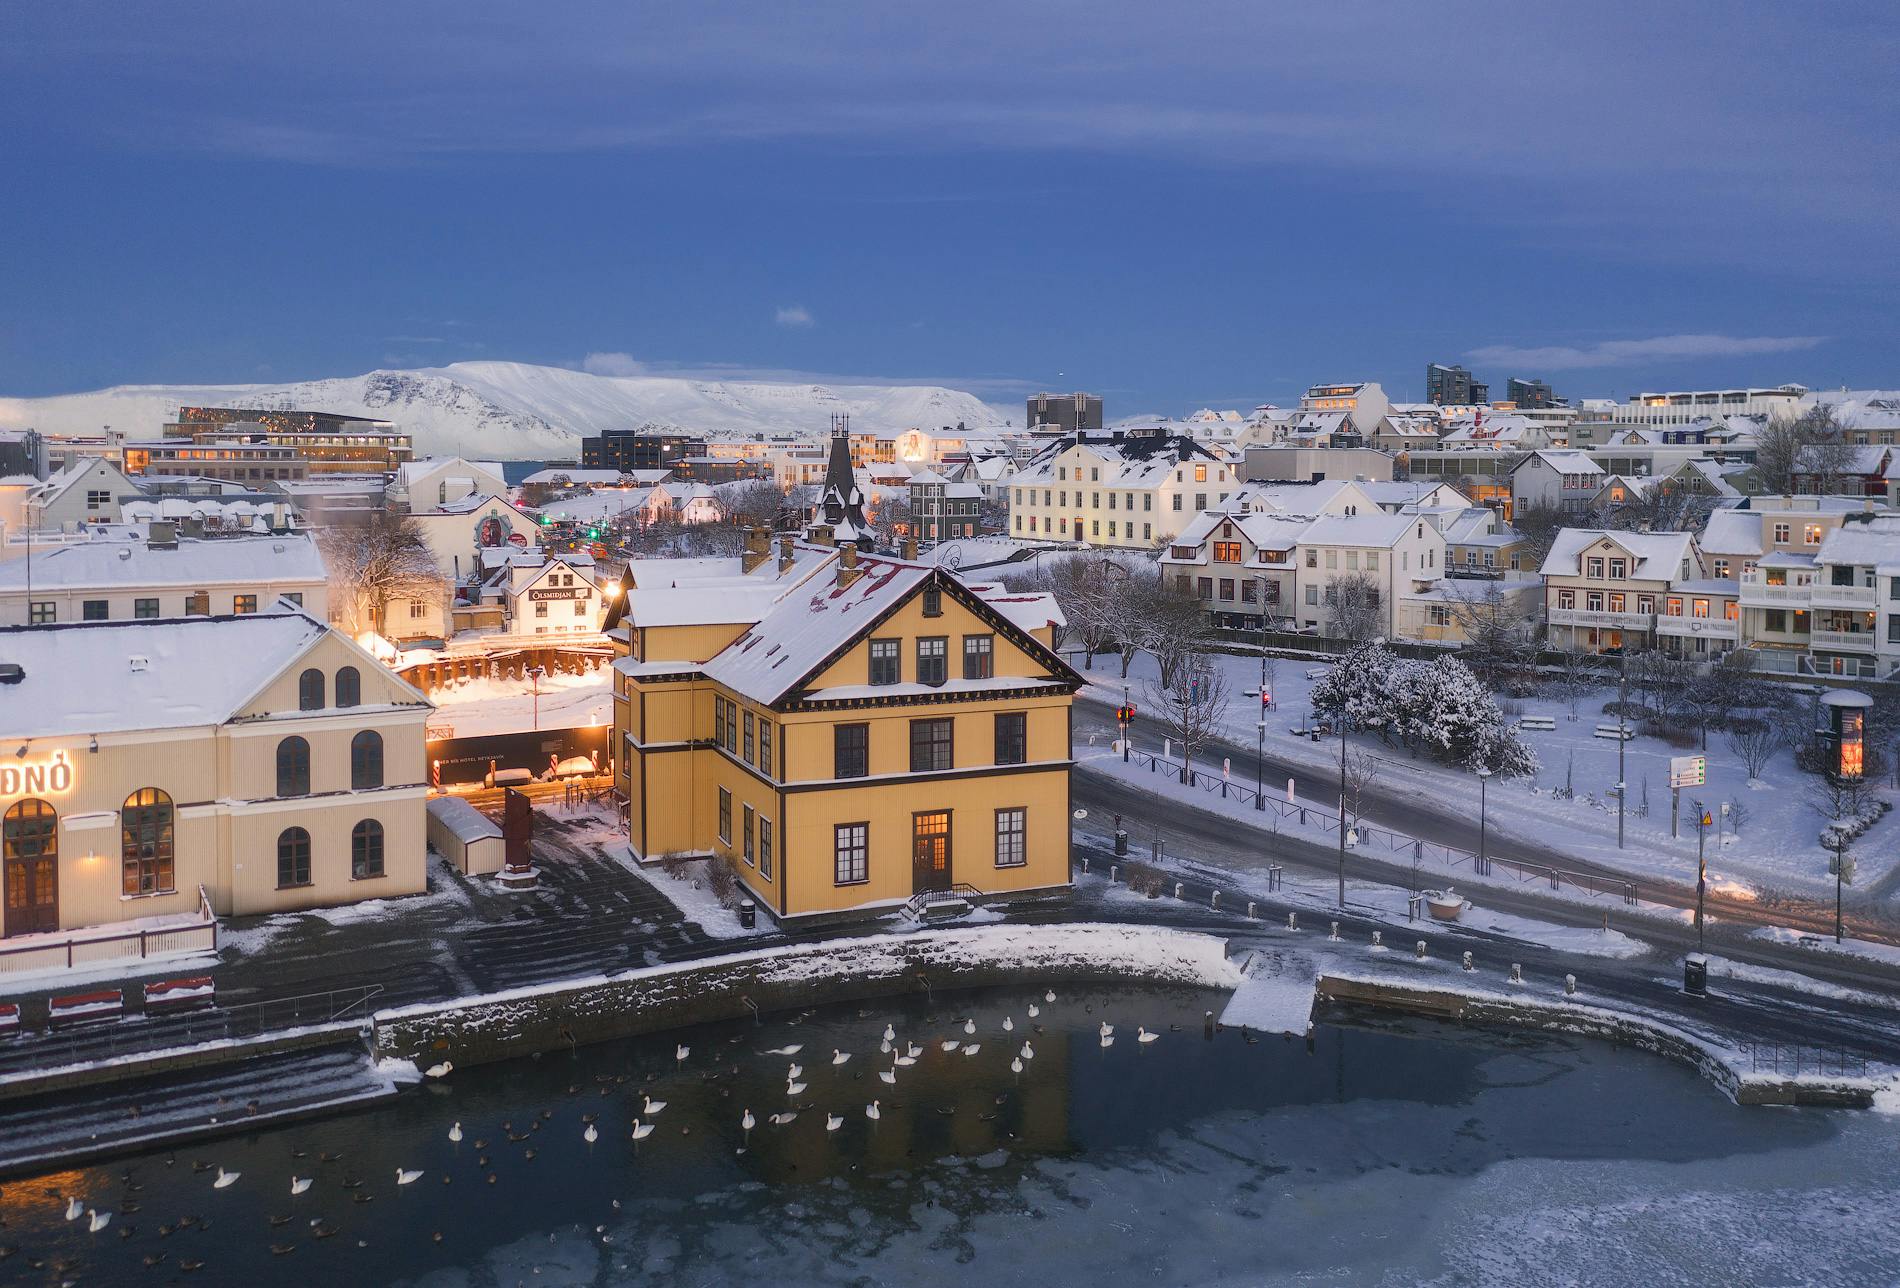 アイスランドの冬景色を極める 14日間の写真ワークショップ Iceland Photo Tours